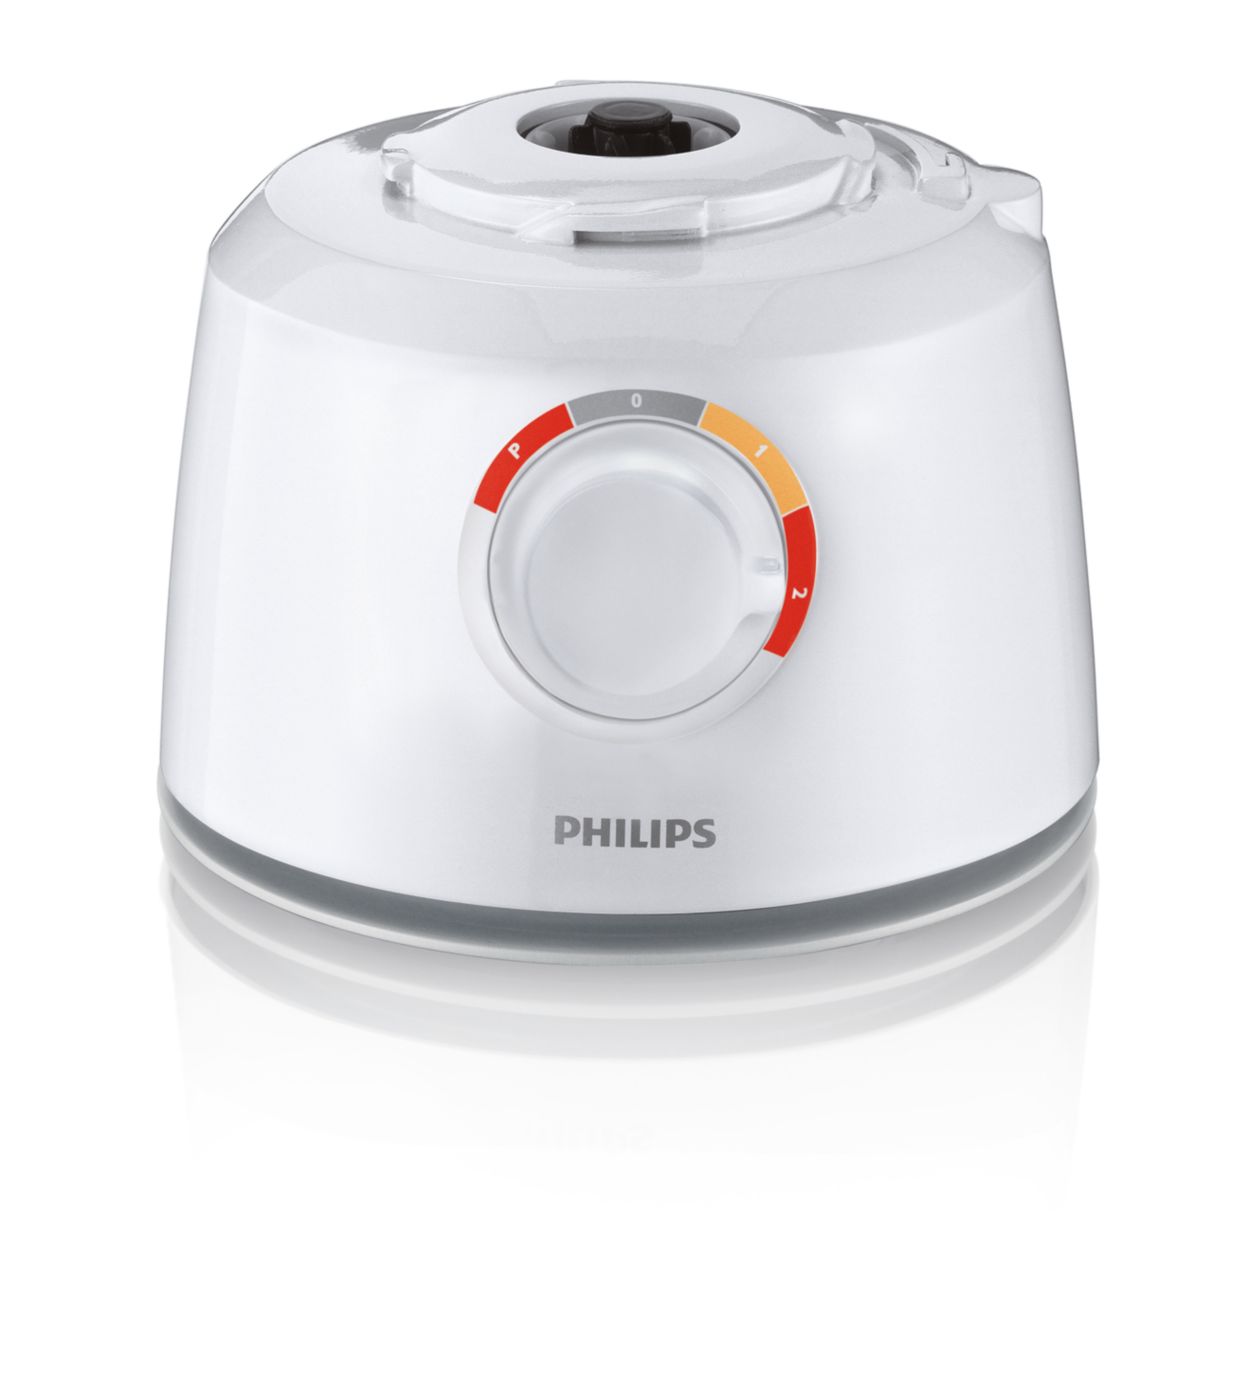 Peeneuts / philips-hr137090 / Mixeur Philips HR137090